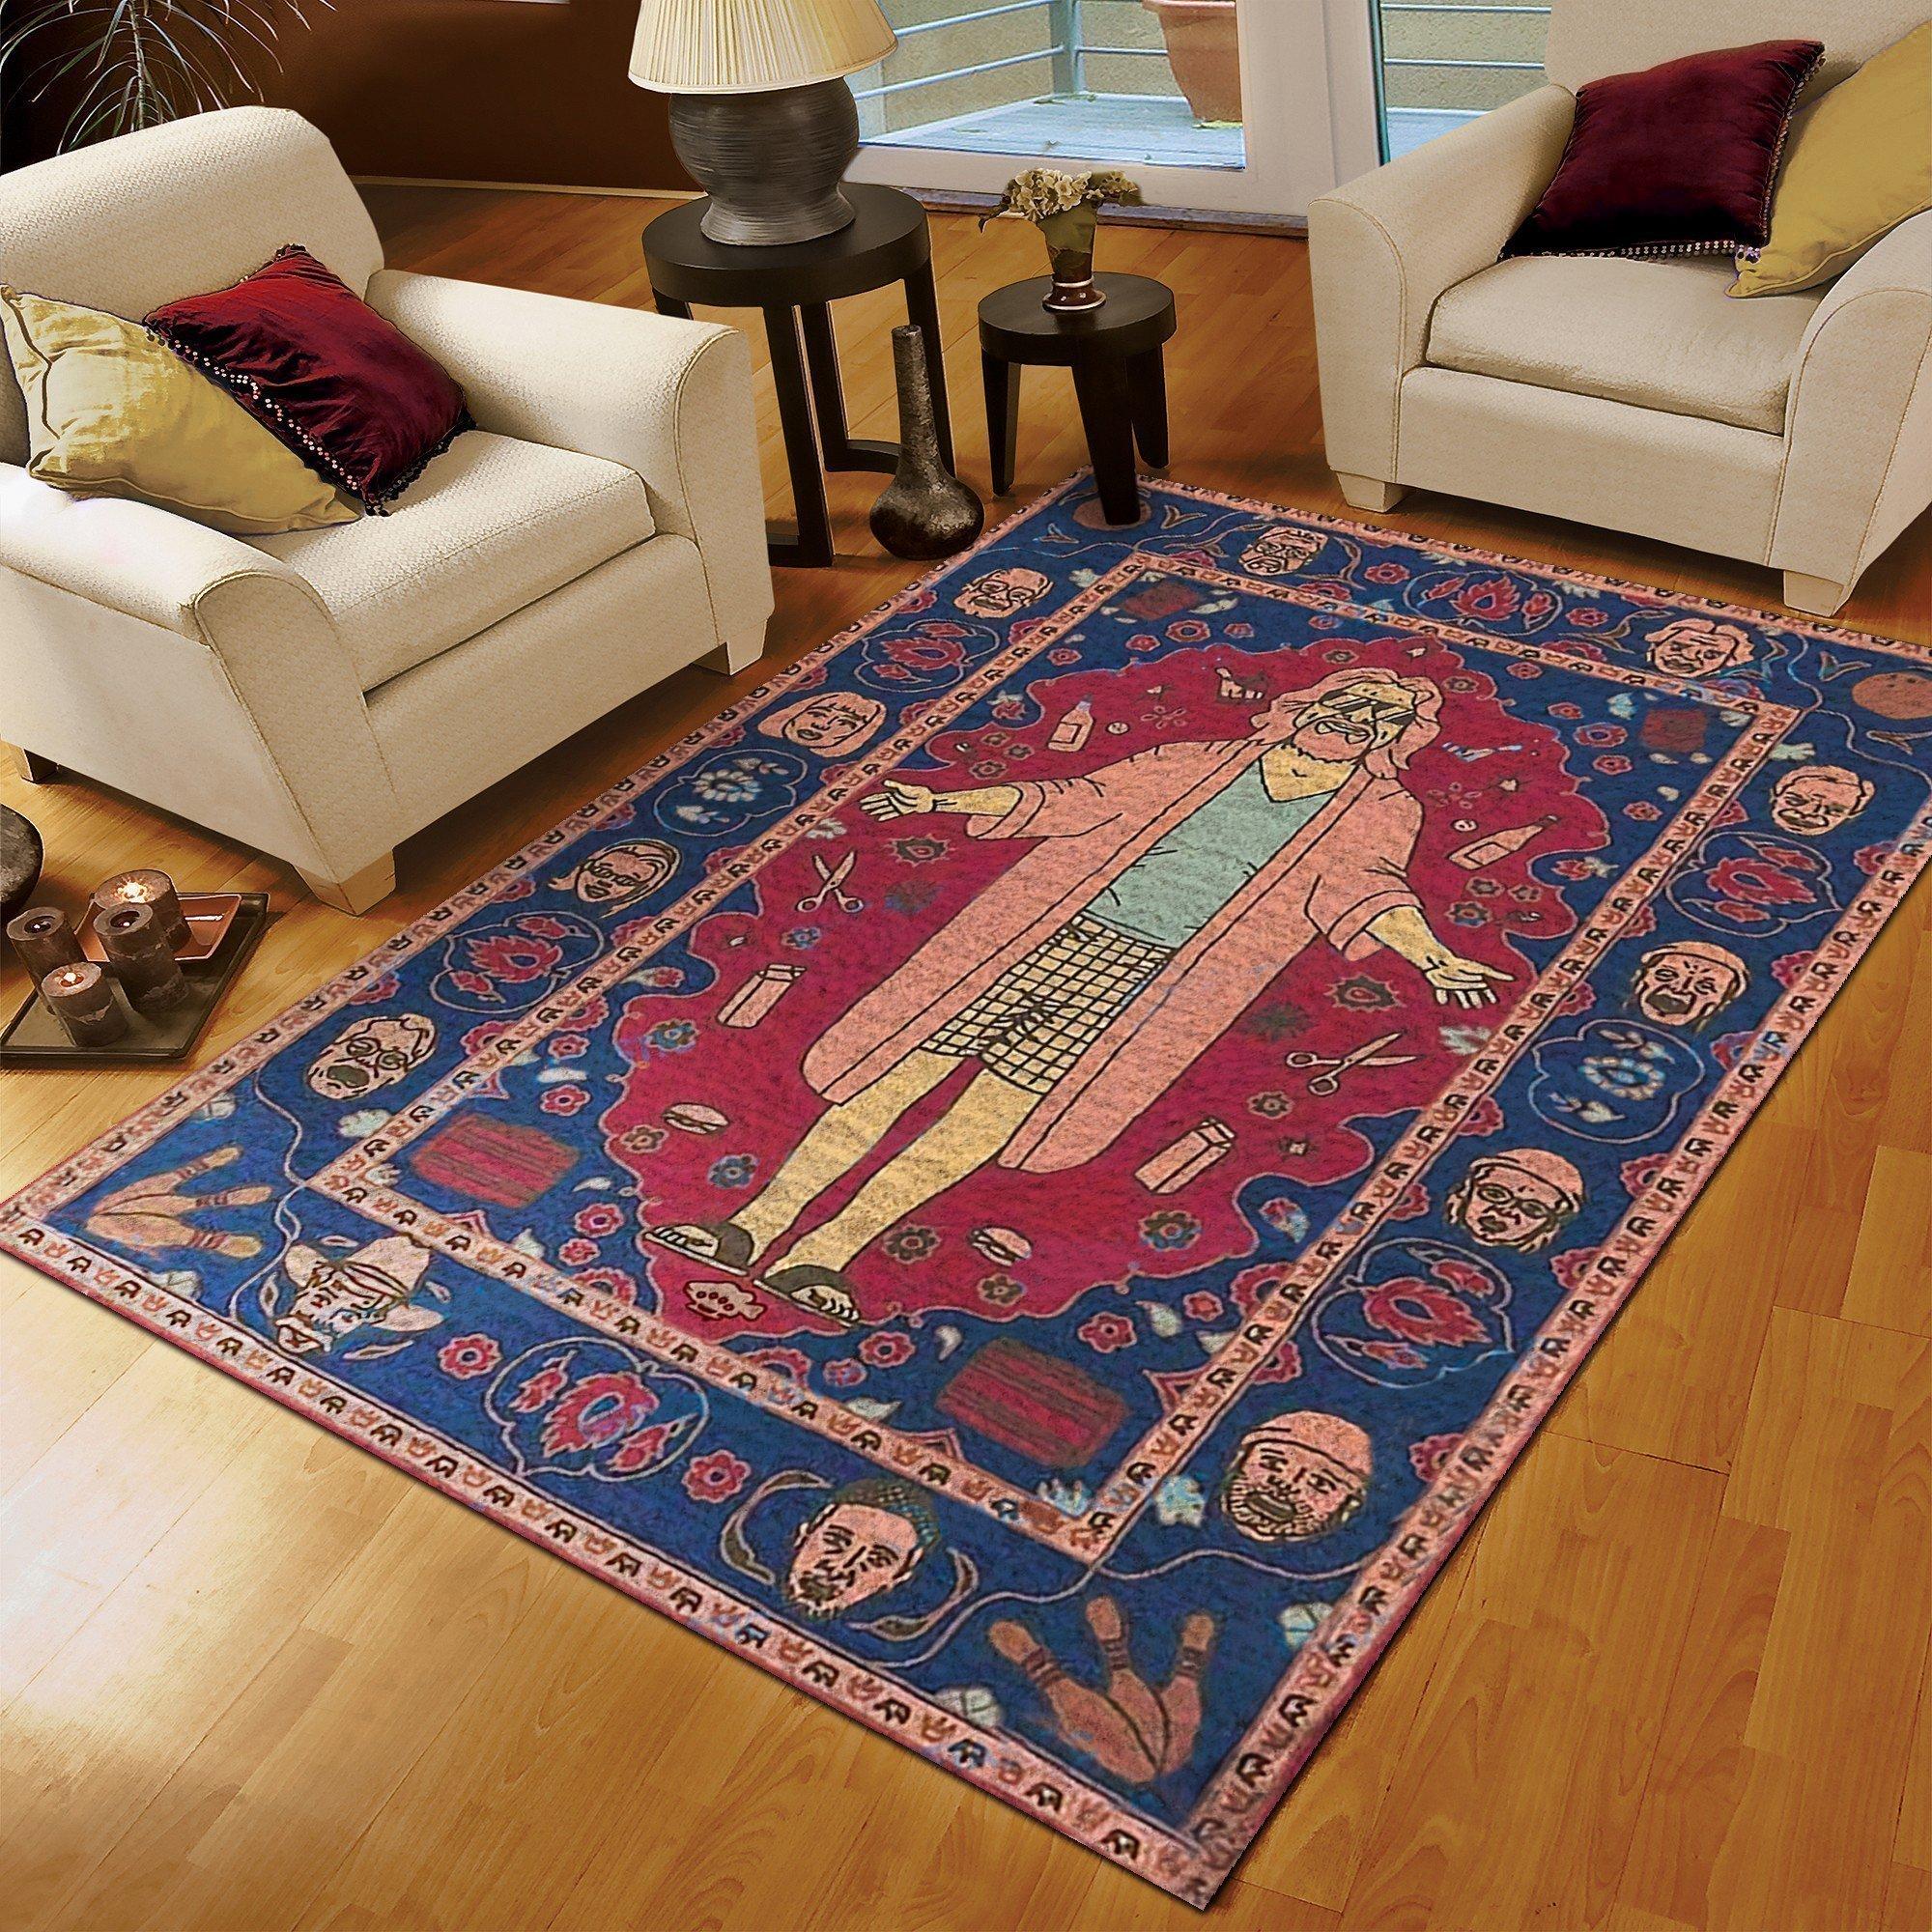 The big lebowski rug - large